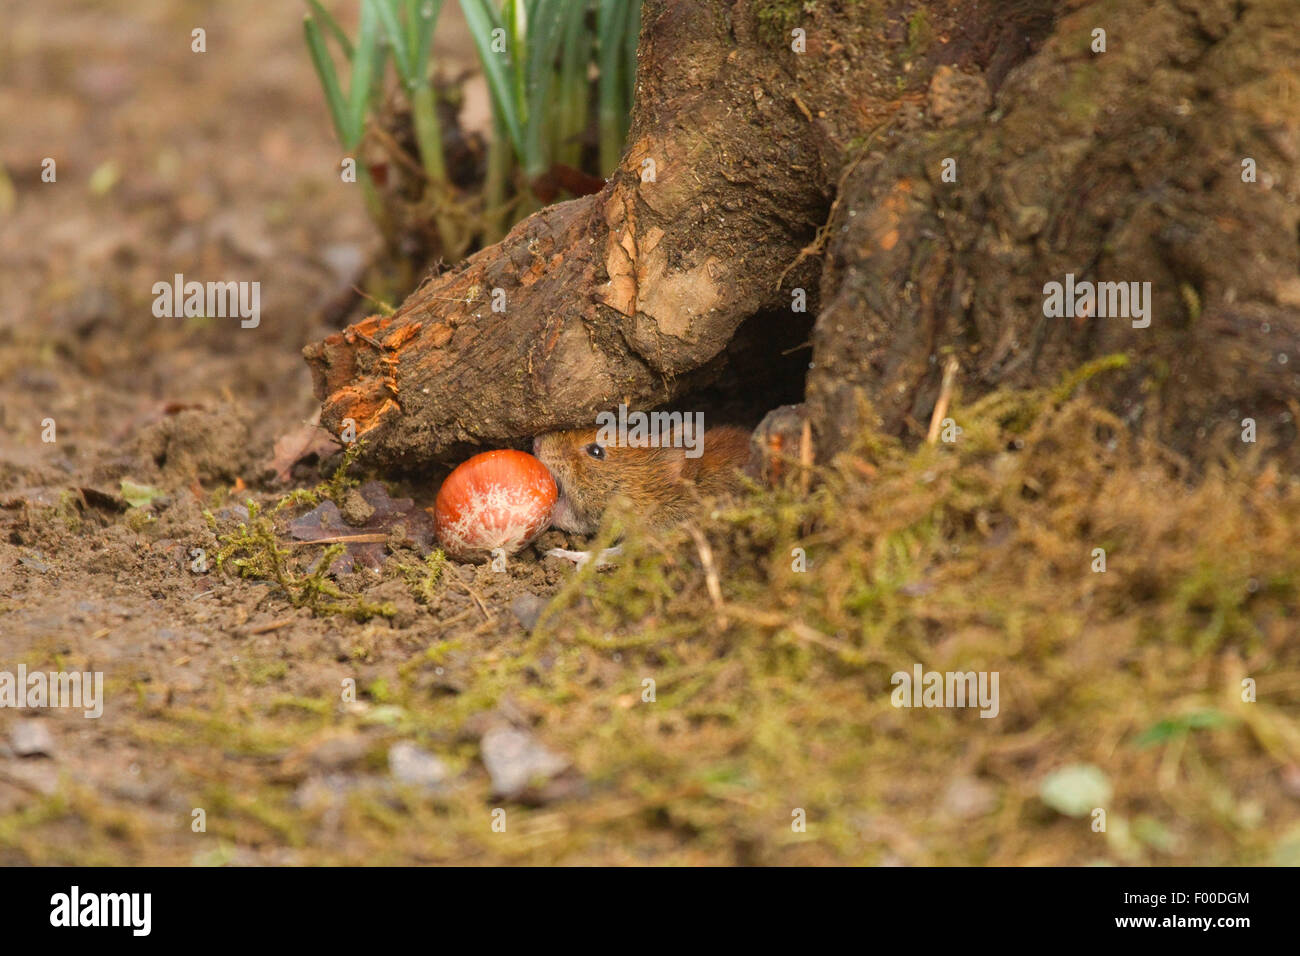 Rötelmaus (Clethrionomys Glareolus, Myodes Glareolus), Maus versucht zu holen in einer Haselnuss in ein Mauseloch, Astloch im Erdgeschoss, Deutschland, Nordrhein-Westfalen Stockfoto